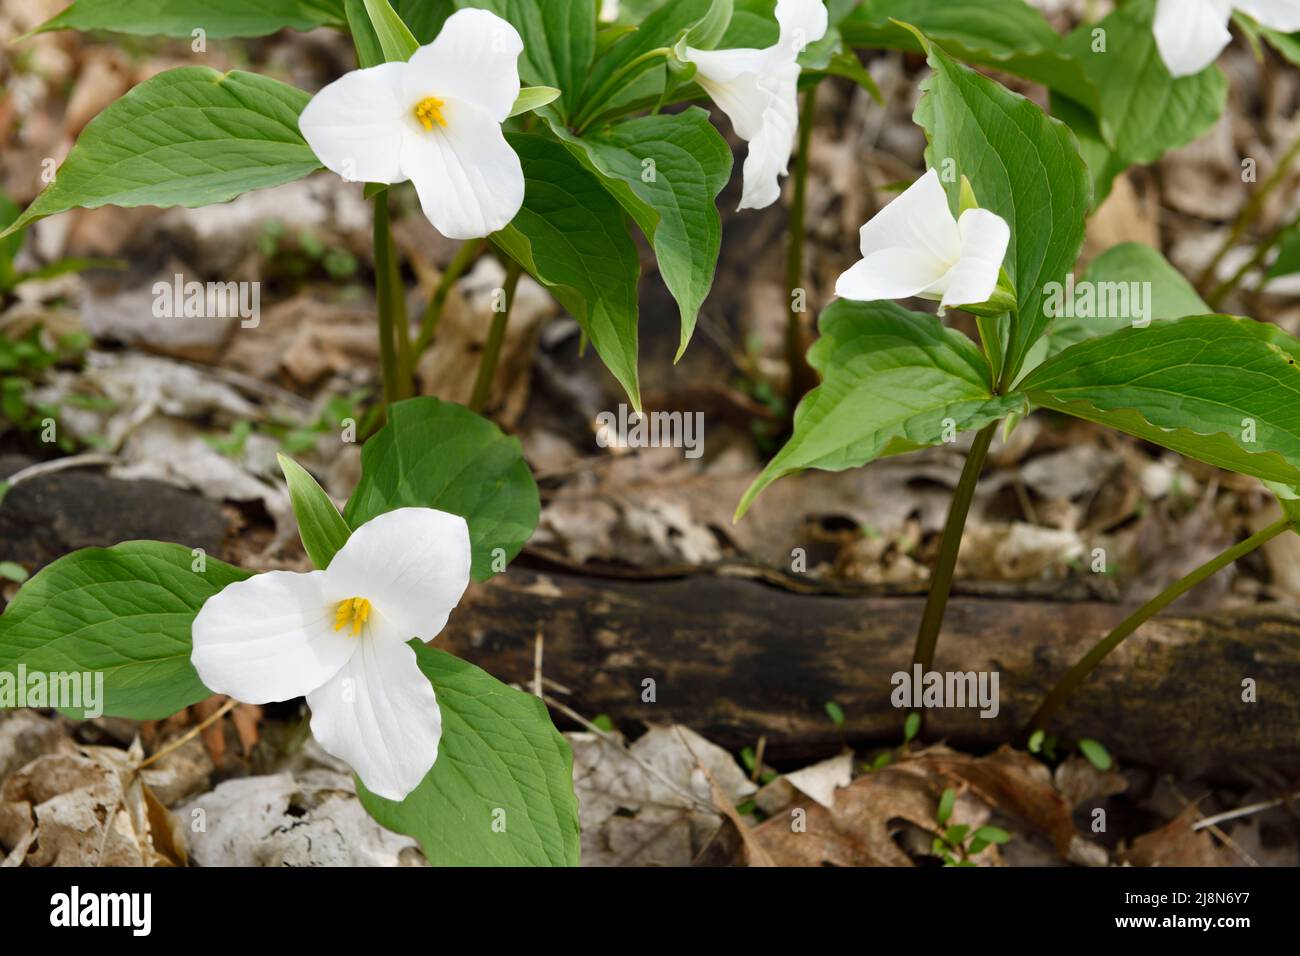 Tri petalo selvaggio Grande Bianco Trillio Primavera fiori Ground Cover Trillium grandiflorum sul pavimento della foresta con foglie morte Foto Stock